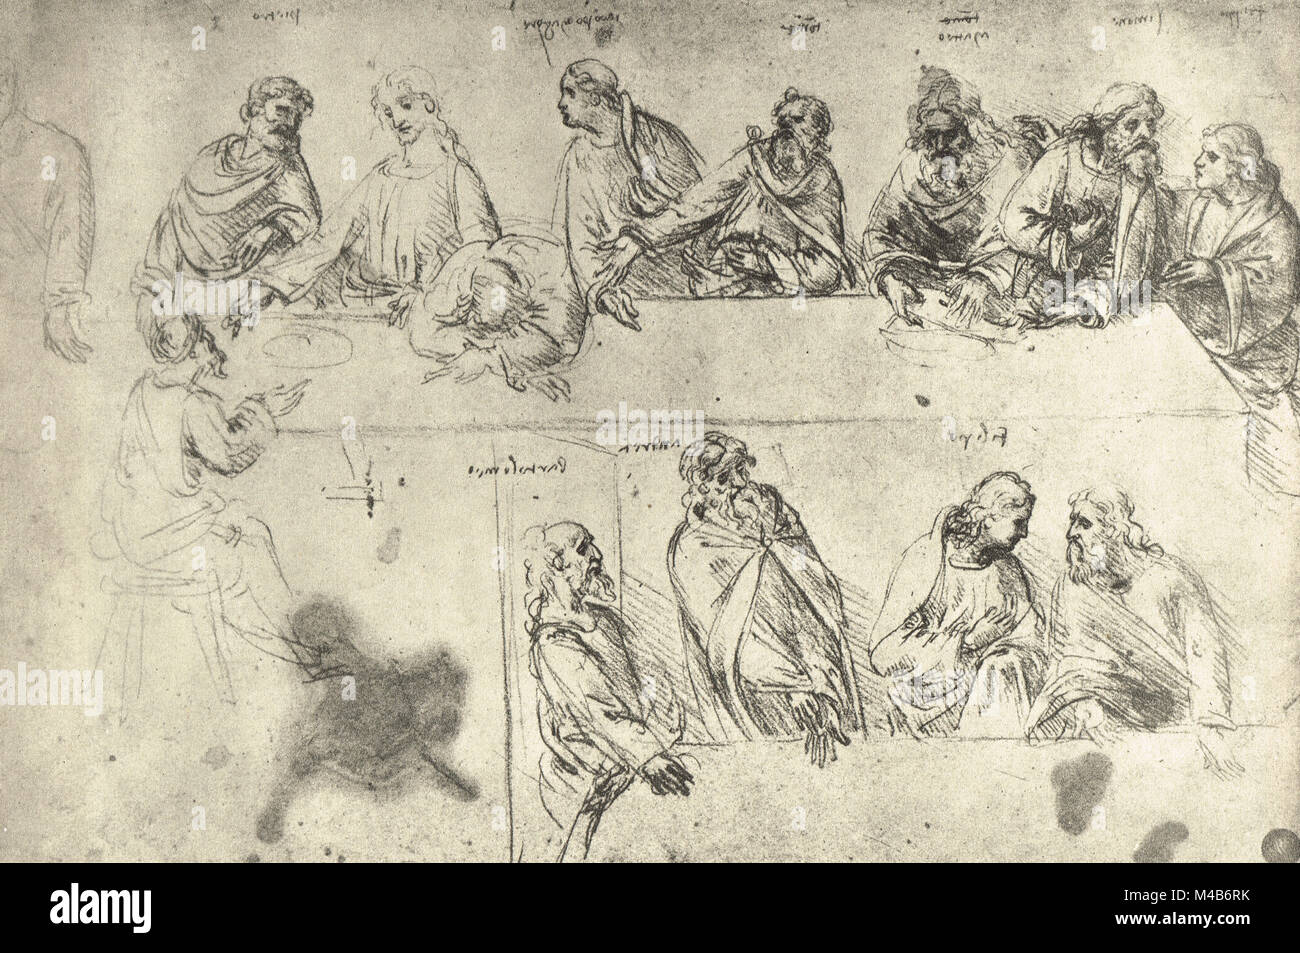 Des études pour la Dernière Cène, dessiné par Léonard de Vinci, vers 1495-97 Banque D'Images